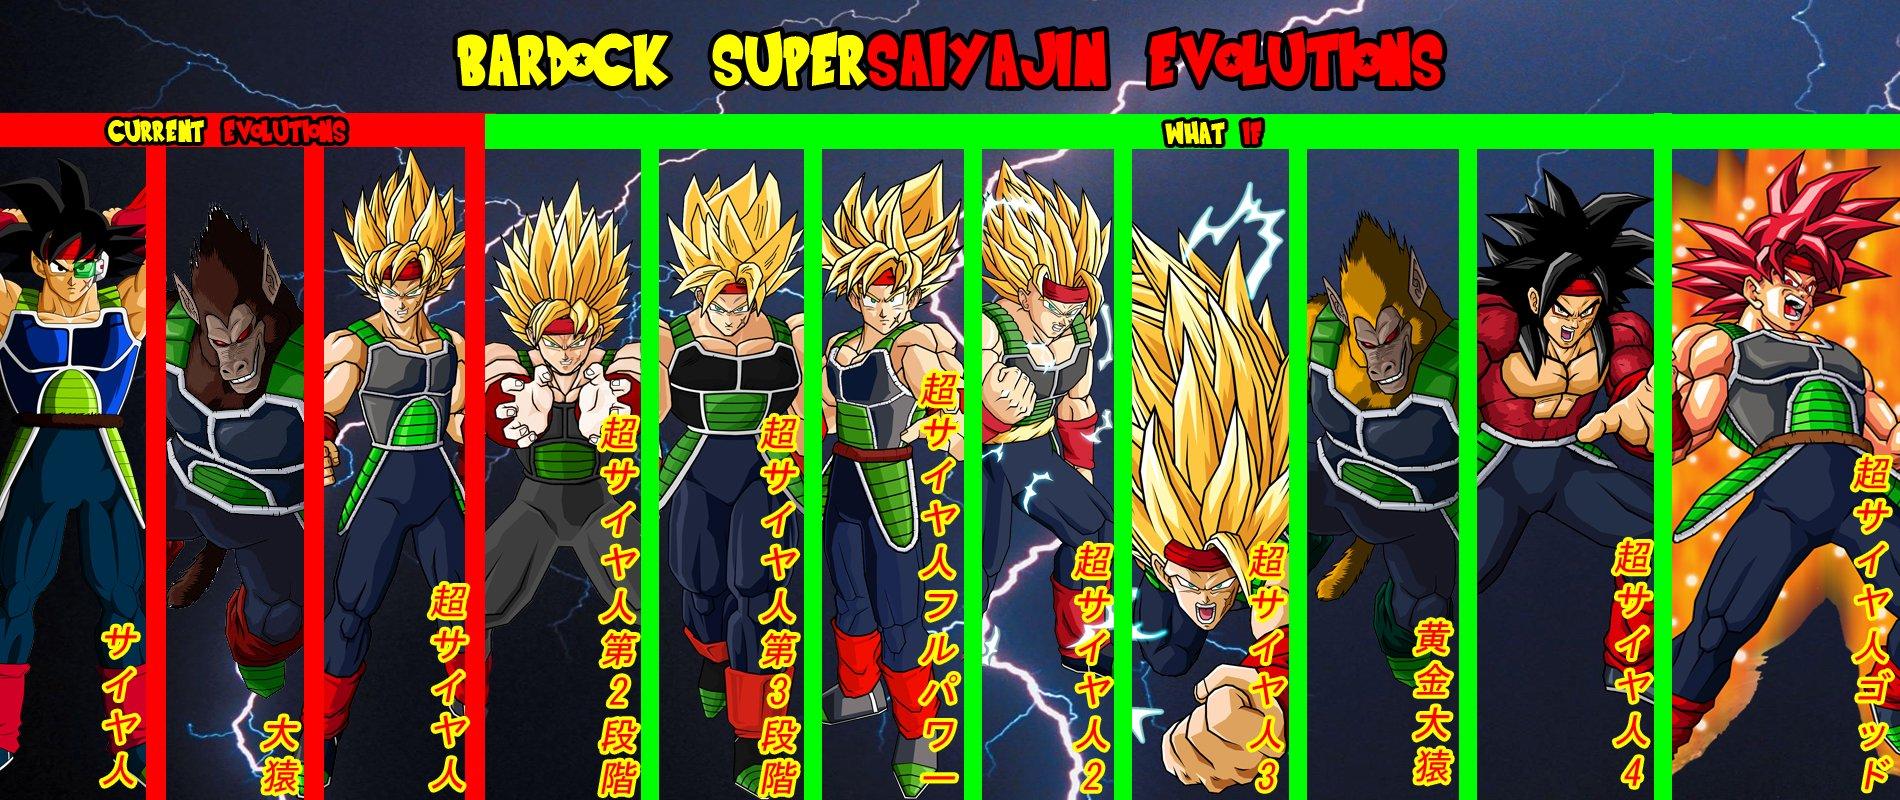 Bardock Supersaiyajin Evolutions Wallpaper